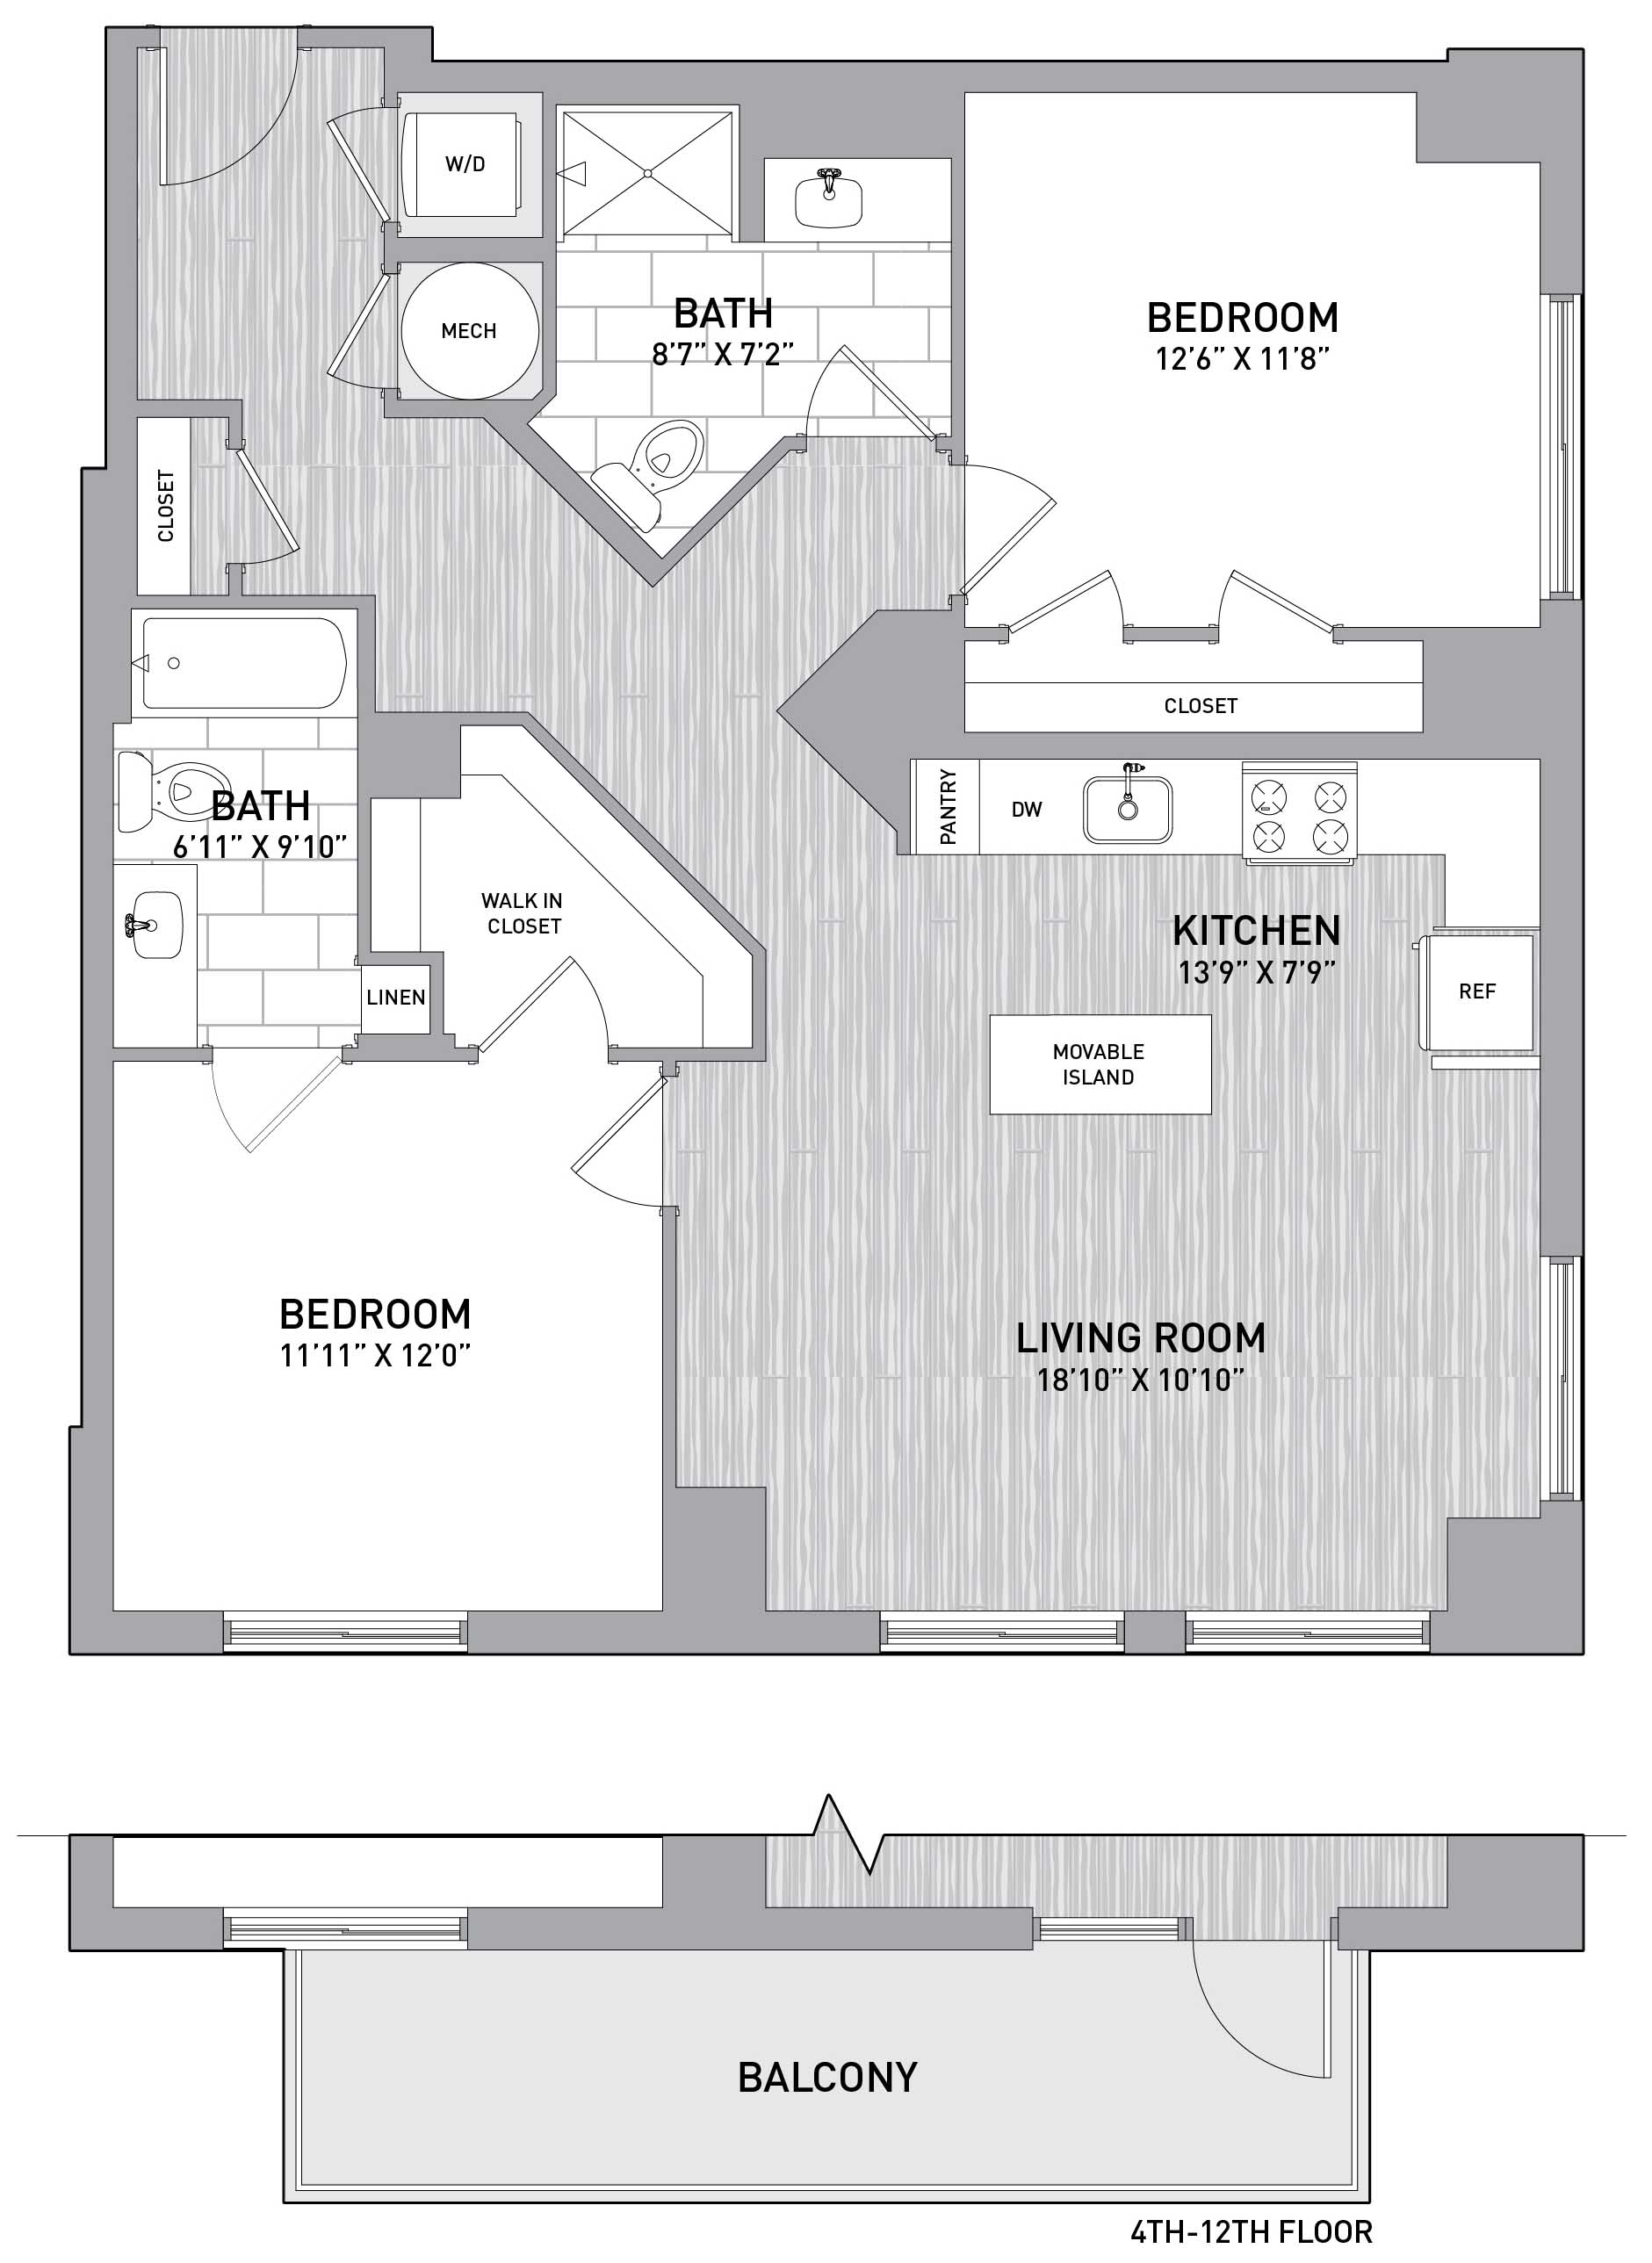 Floorplan Image of unit 151-0411